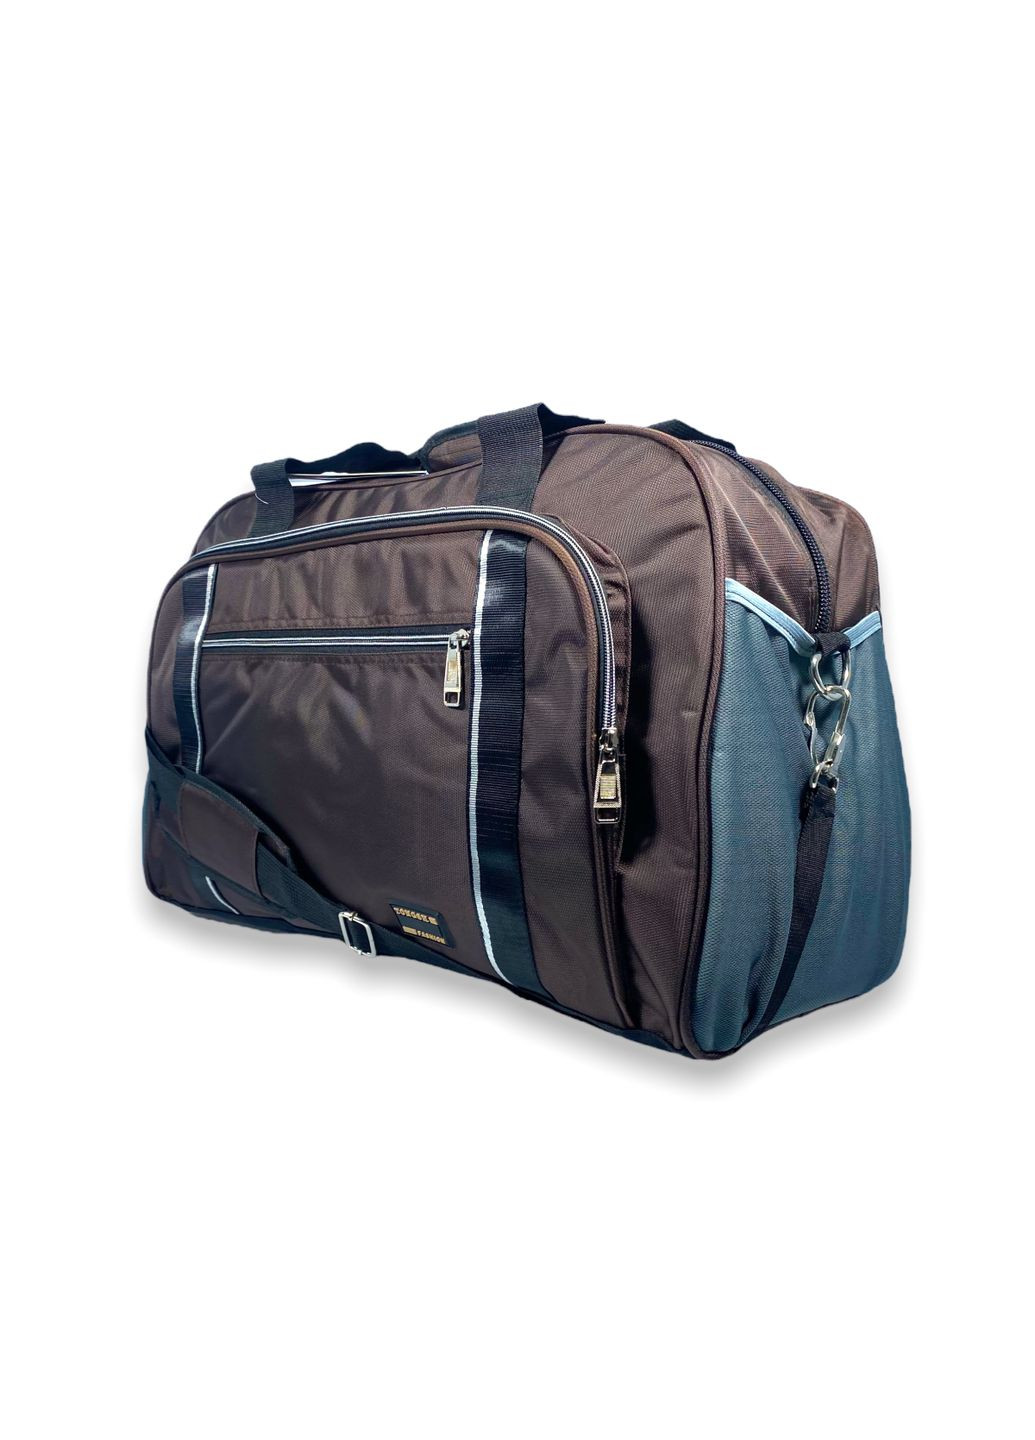 Дорожная сумка 60 л одно отделение внутренний карман два фронтальных кармана размер: 60*40*25 см коричневый Tongsheng (285815014)